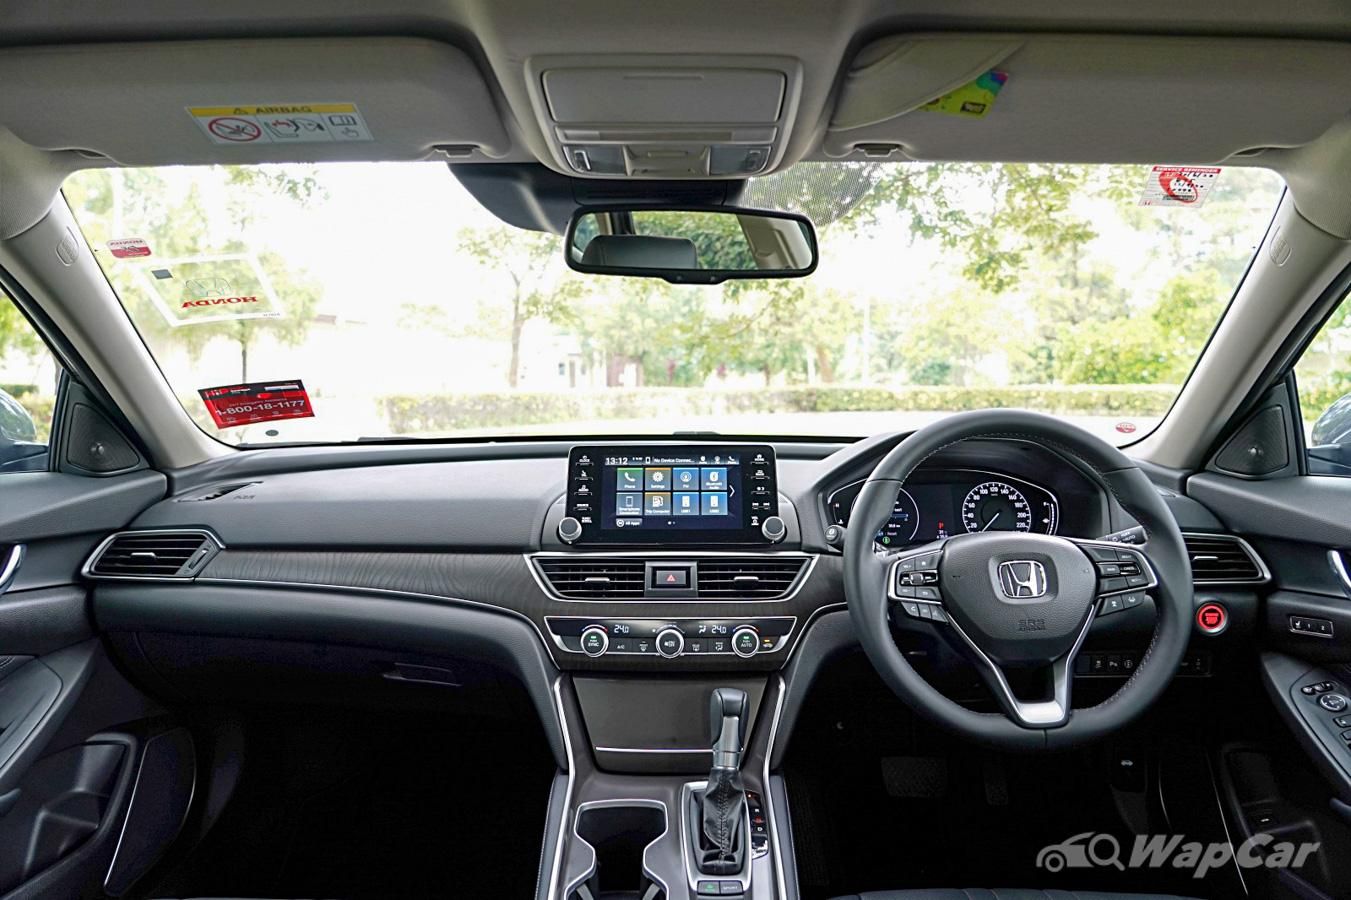 2020 Honda Accord 1.5TC Premium Interior 003